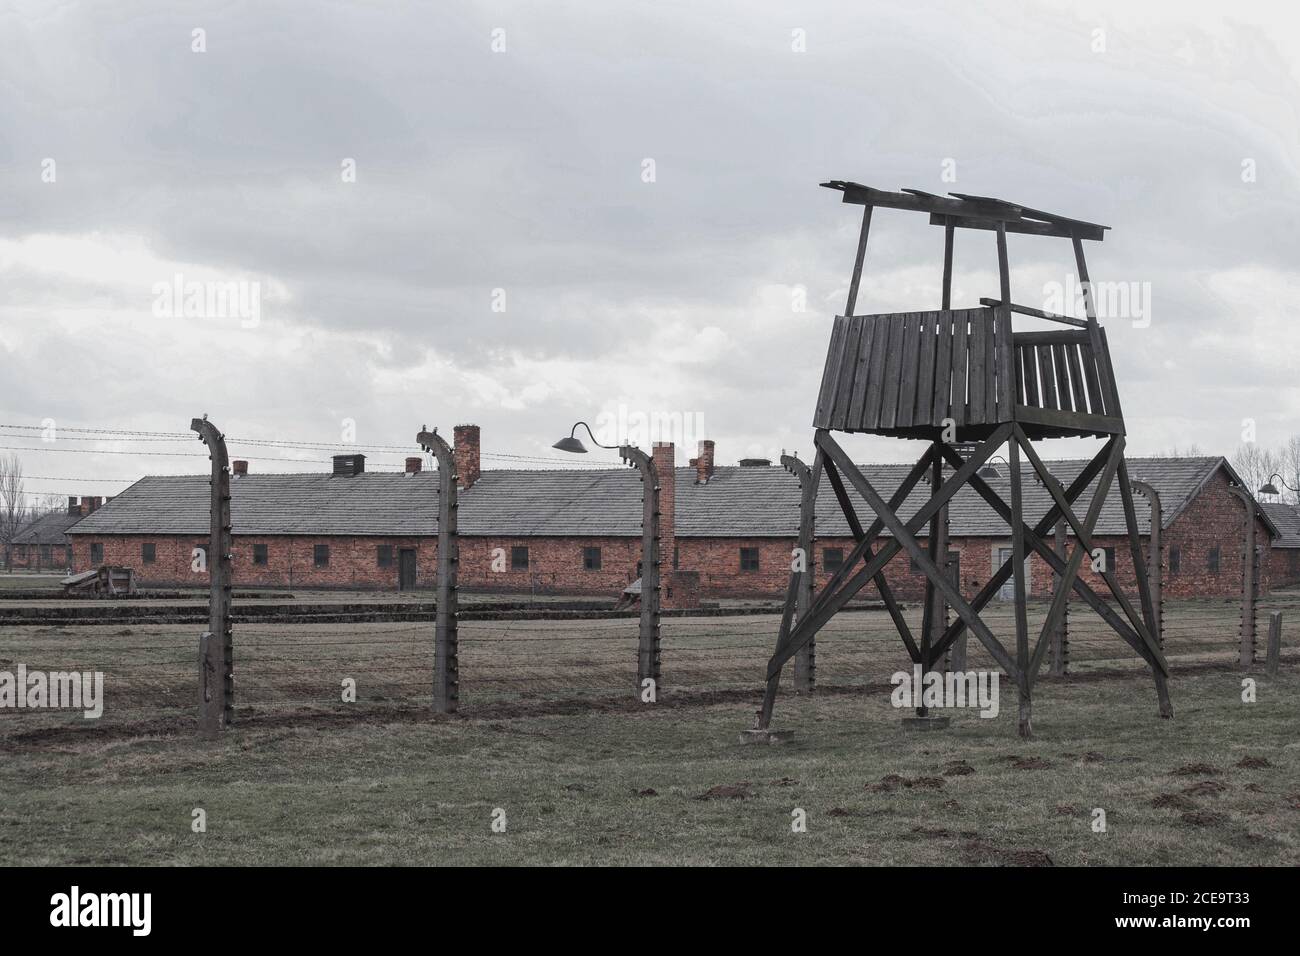 Un tour de garde dans un camp de concentration Auschwitz Birkenau Polen, le 12 mars 2019 Banque D'Images